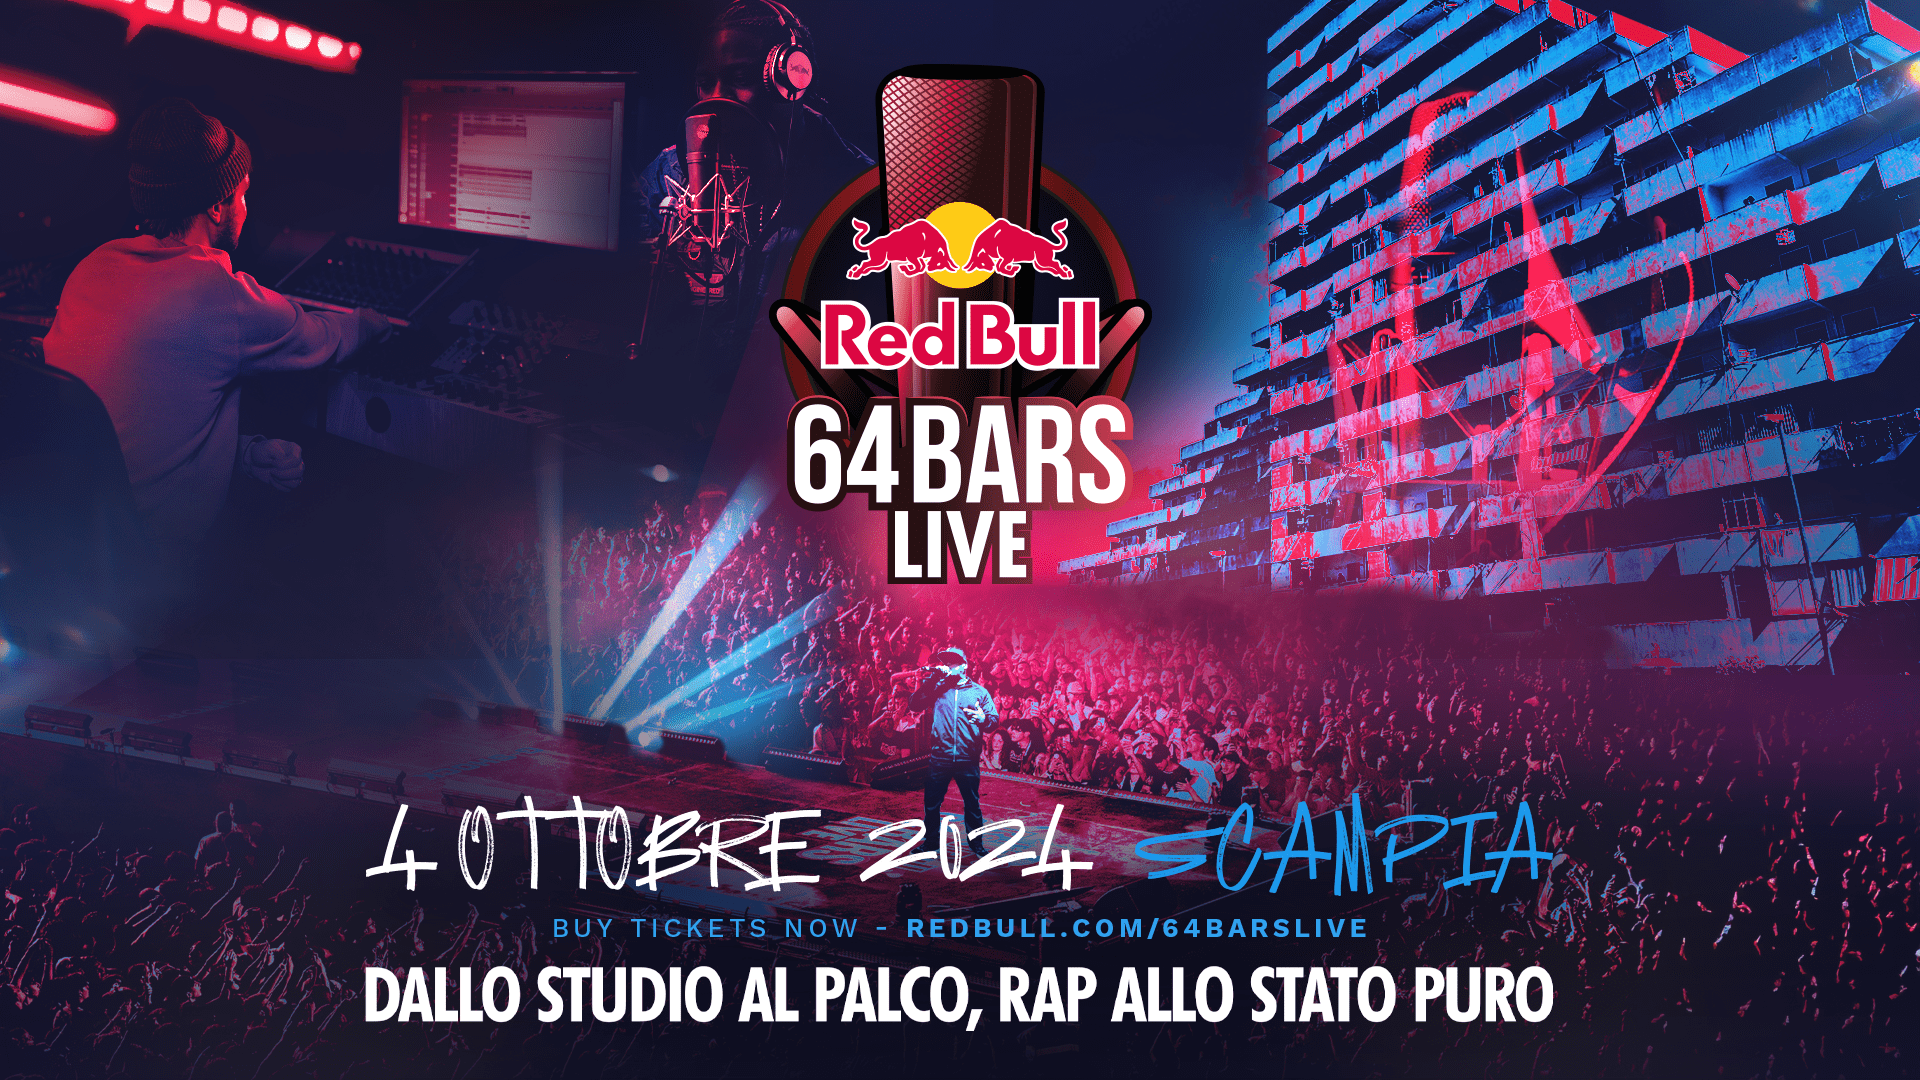 Red Bull 64 Bars Live torna a Scampia il 4 ottobre